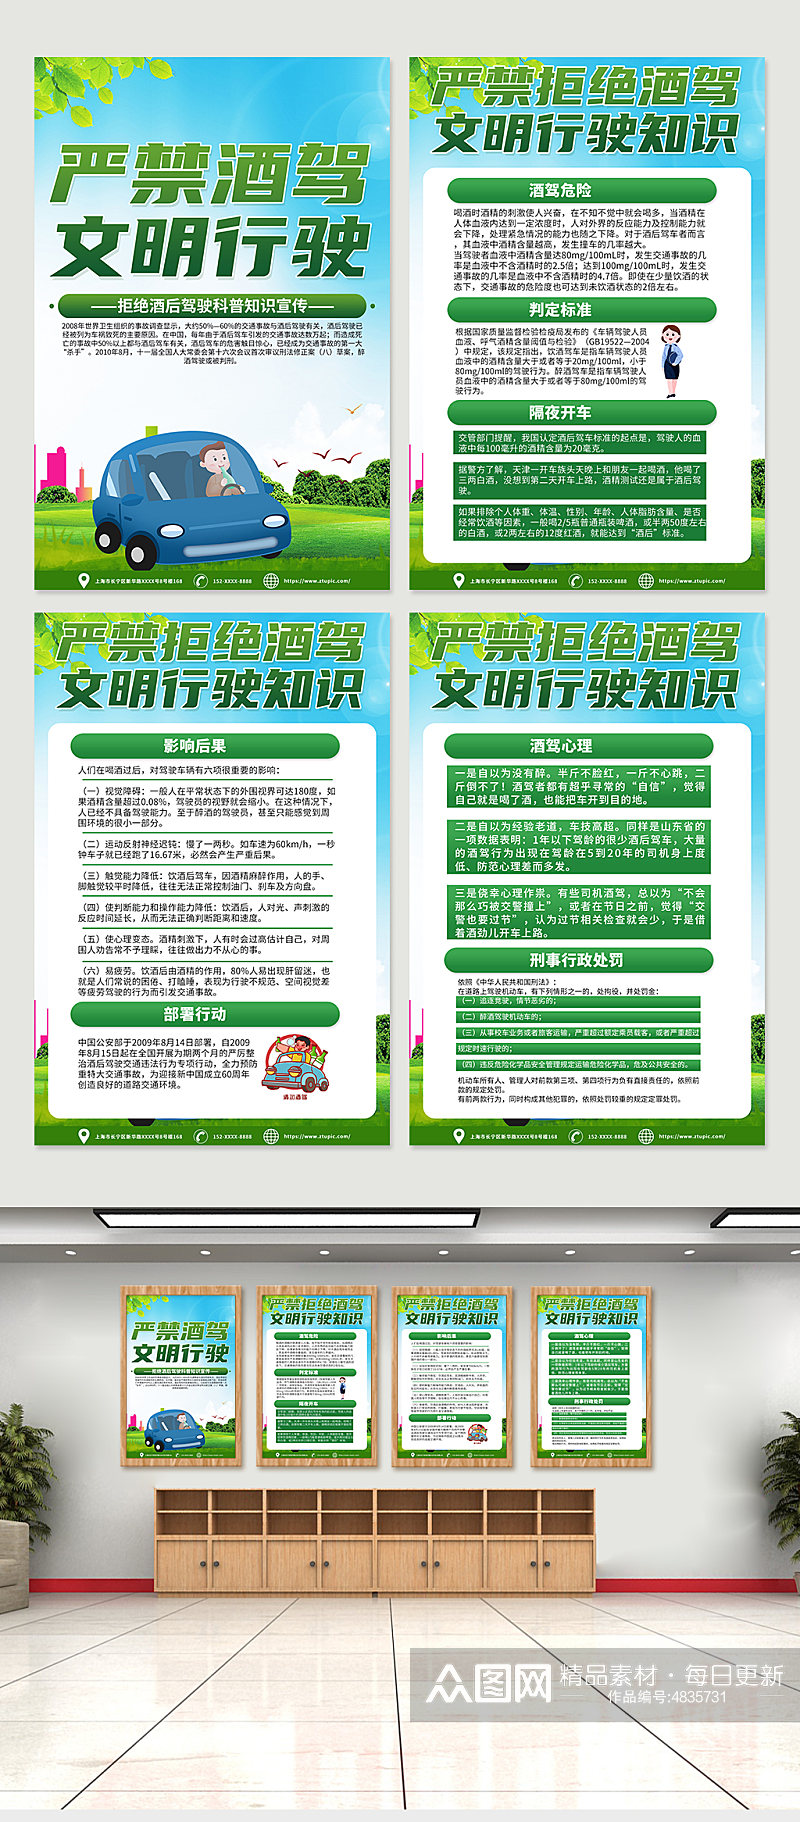 绿色严禁拒绝酒驾交通安全知识宣传海报素材